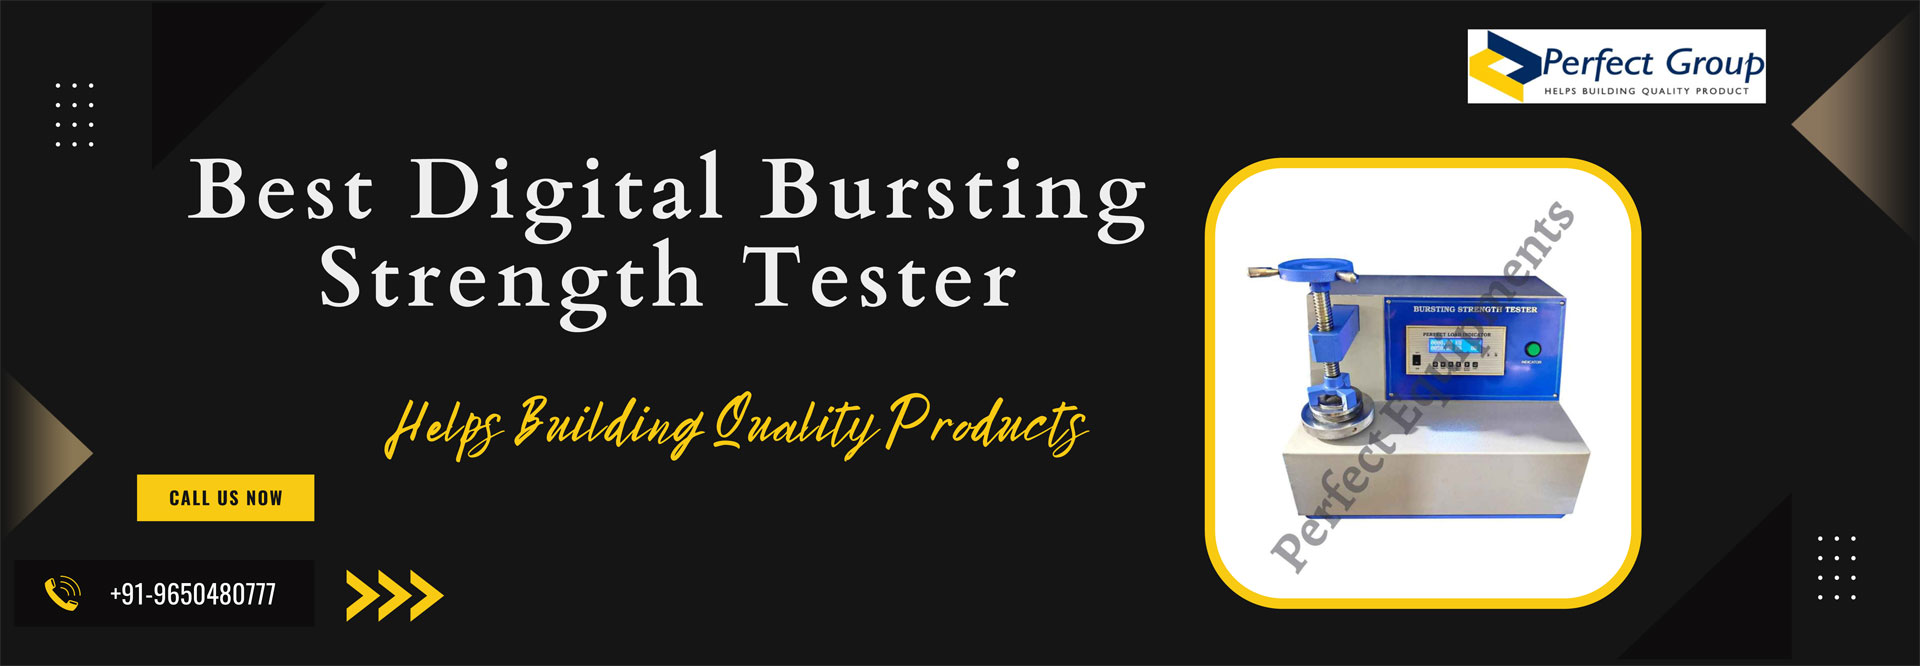 Best Digital Bursting Strength Tester